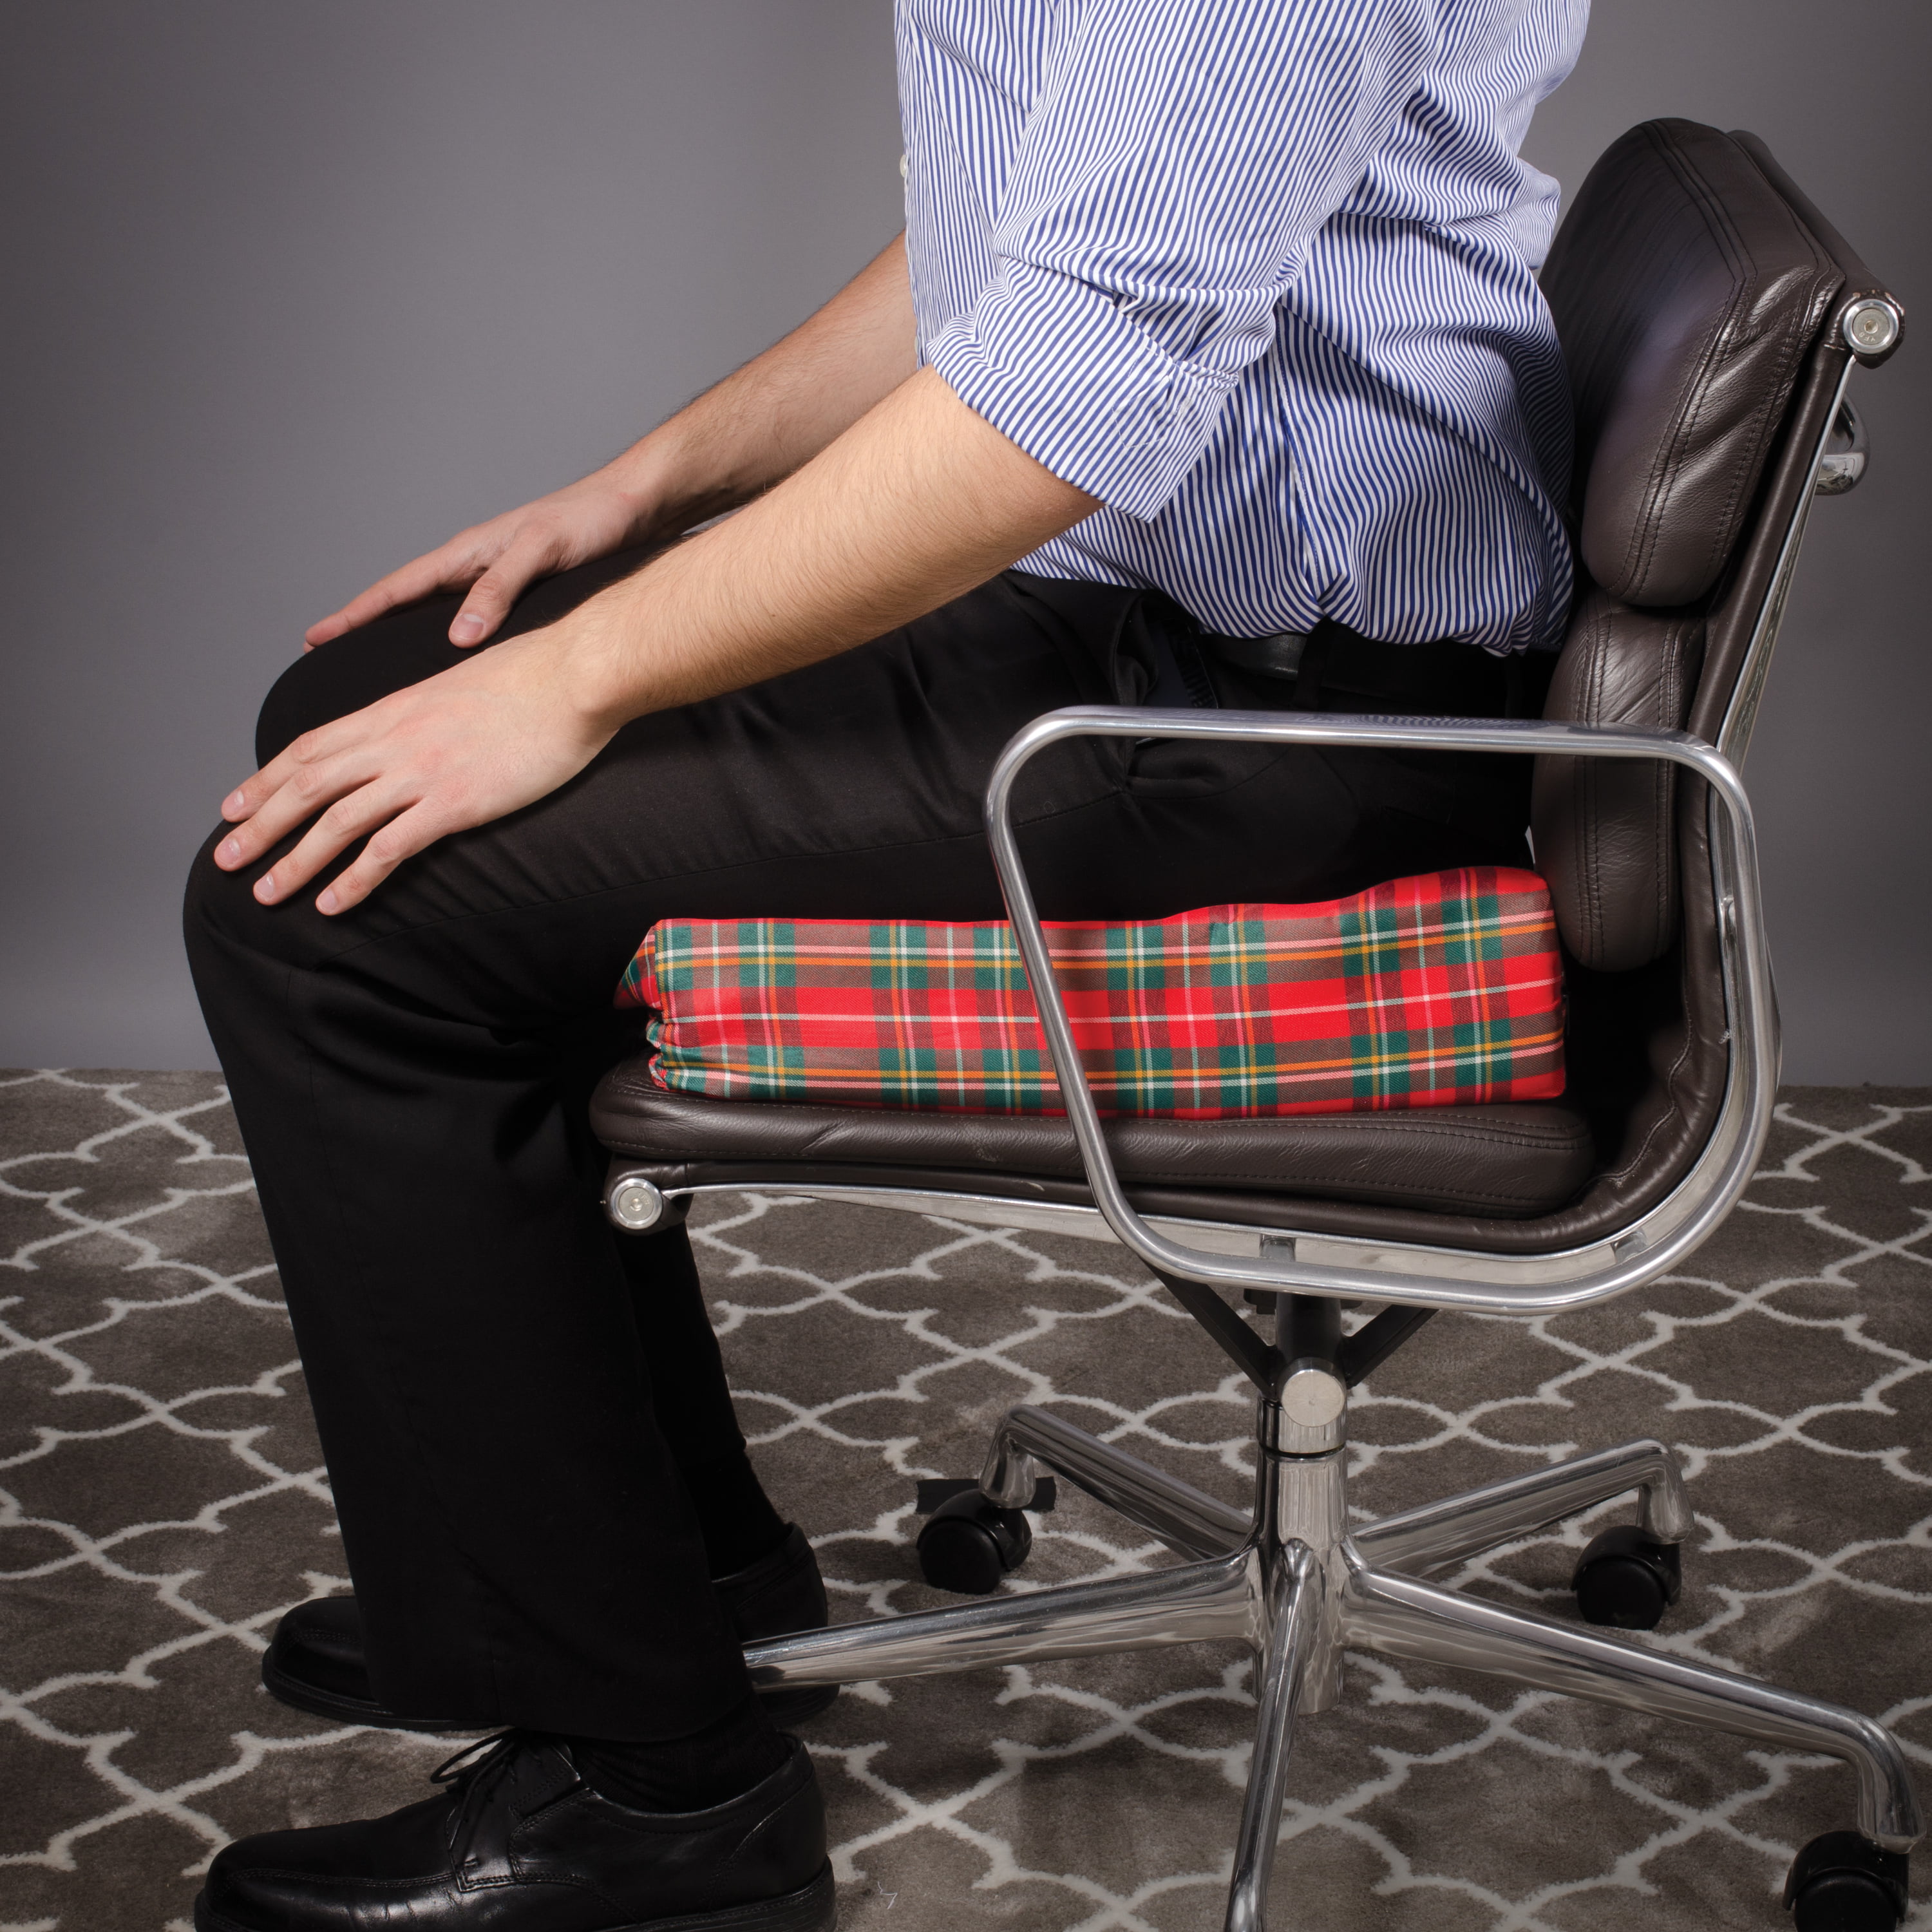 DMI Egg Crate Sculpted Foam Chair Cushion, Seat Cushion, Car Seat Cushion,  Office Chair Cushion or Wheelchair Cushion to Relieve Back Pain, Tail Bone  Pain, Sciatica, 18x16x4, Plaid Cover 